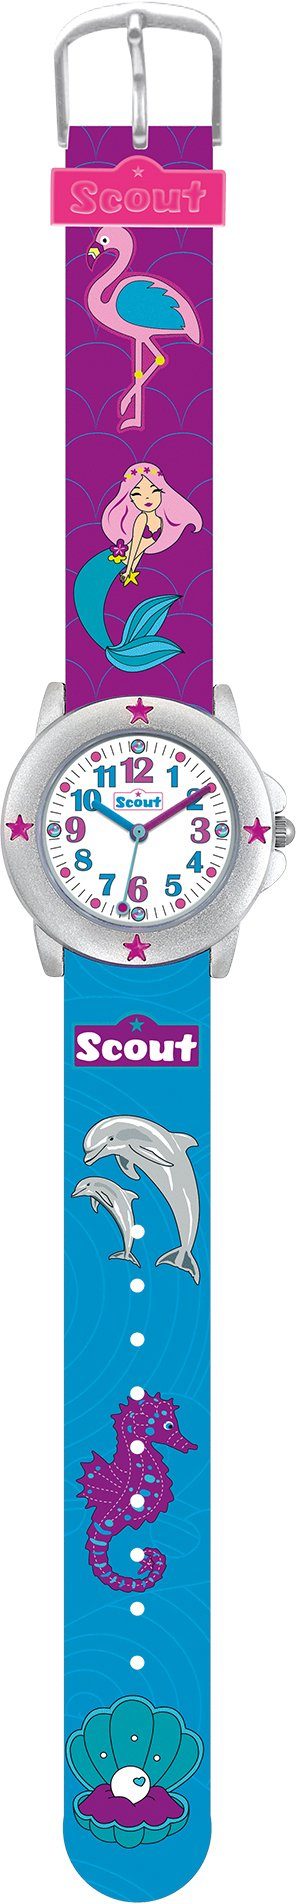 Scout Quarzuhr Star Kids, Muschel-Delphin-,Meerjungfraumotiv, auch Geschenk 280393023, als ideal